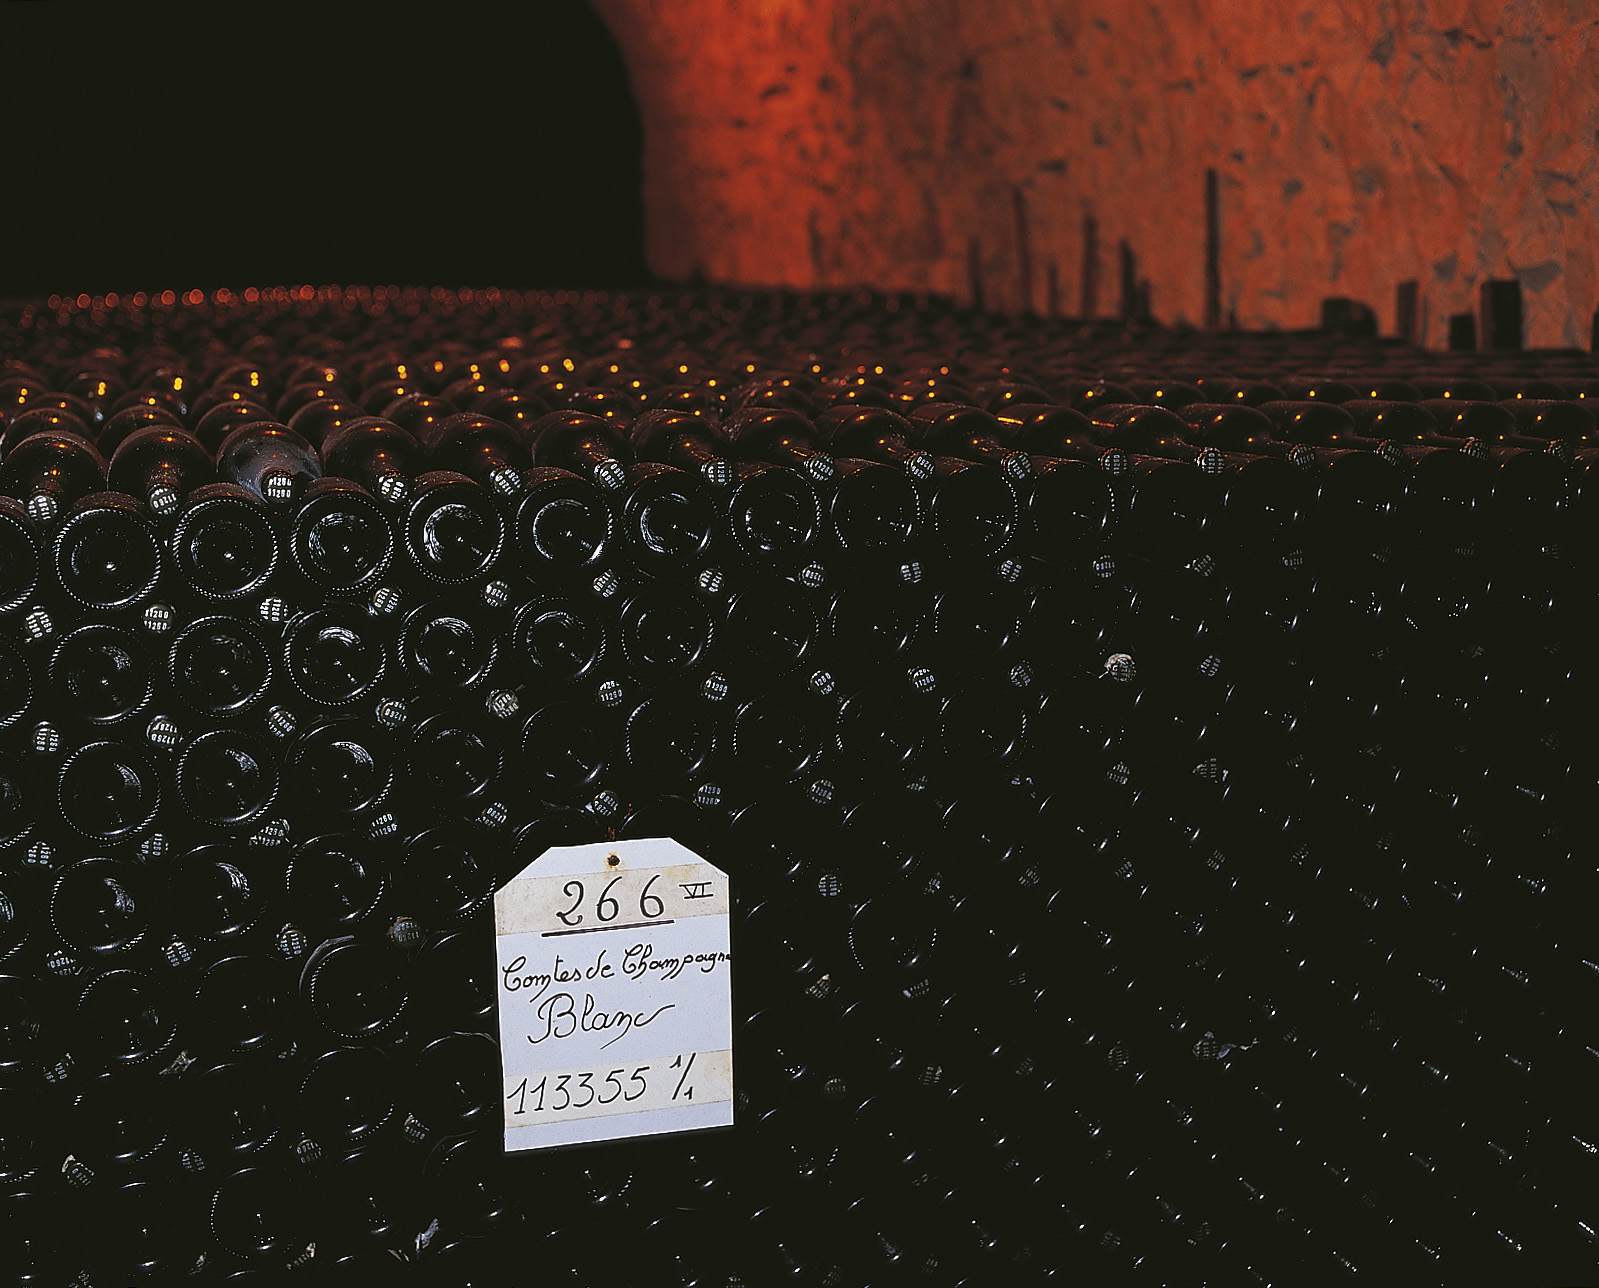 Taittinger Comtes De Champagne Blanc De Blancs Brut | Quentin Sadler's Wine  Page